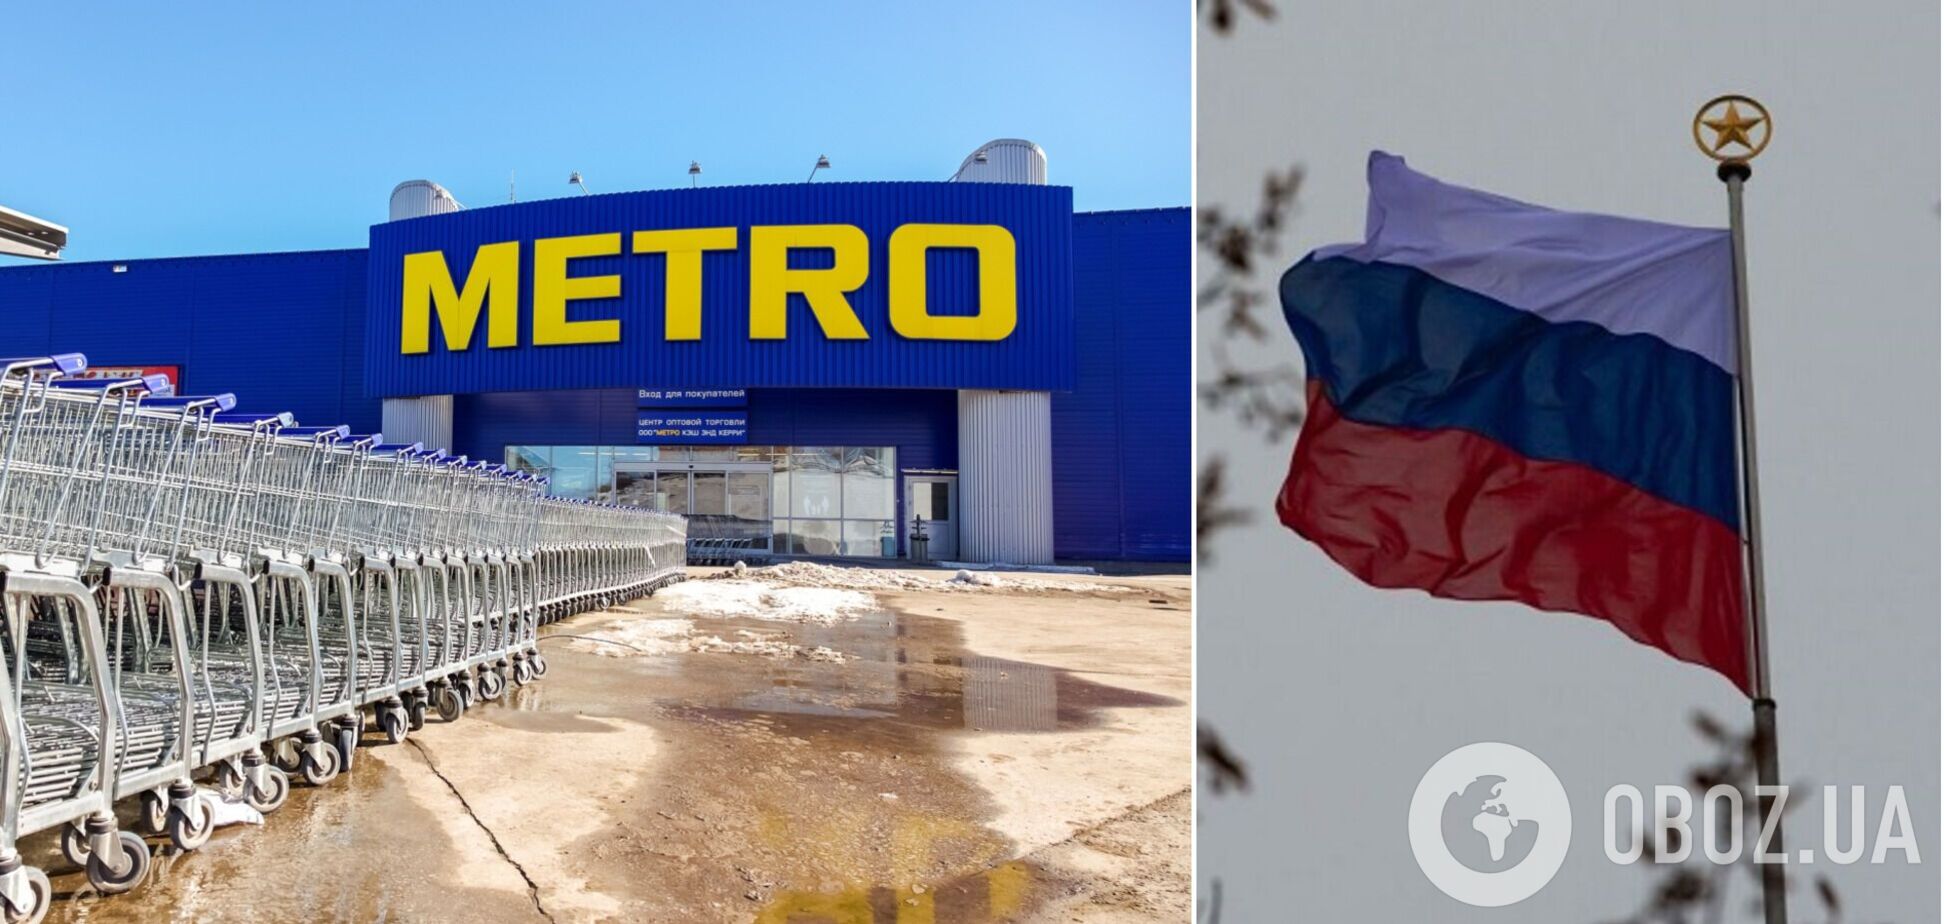 РосСМИ сообщили, что гендиректор Metro заявил о желании продолжать работу в России